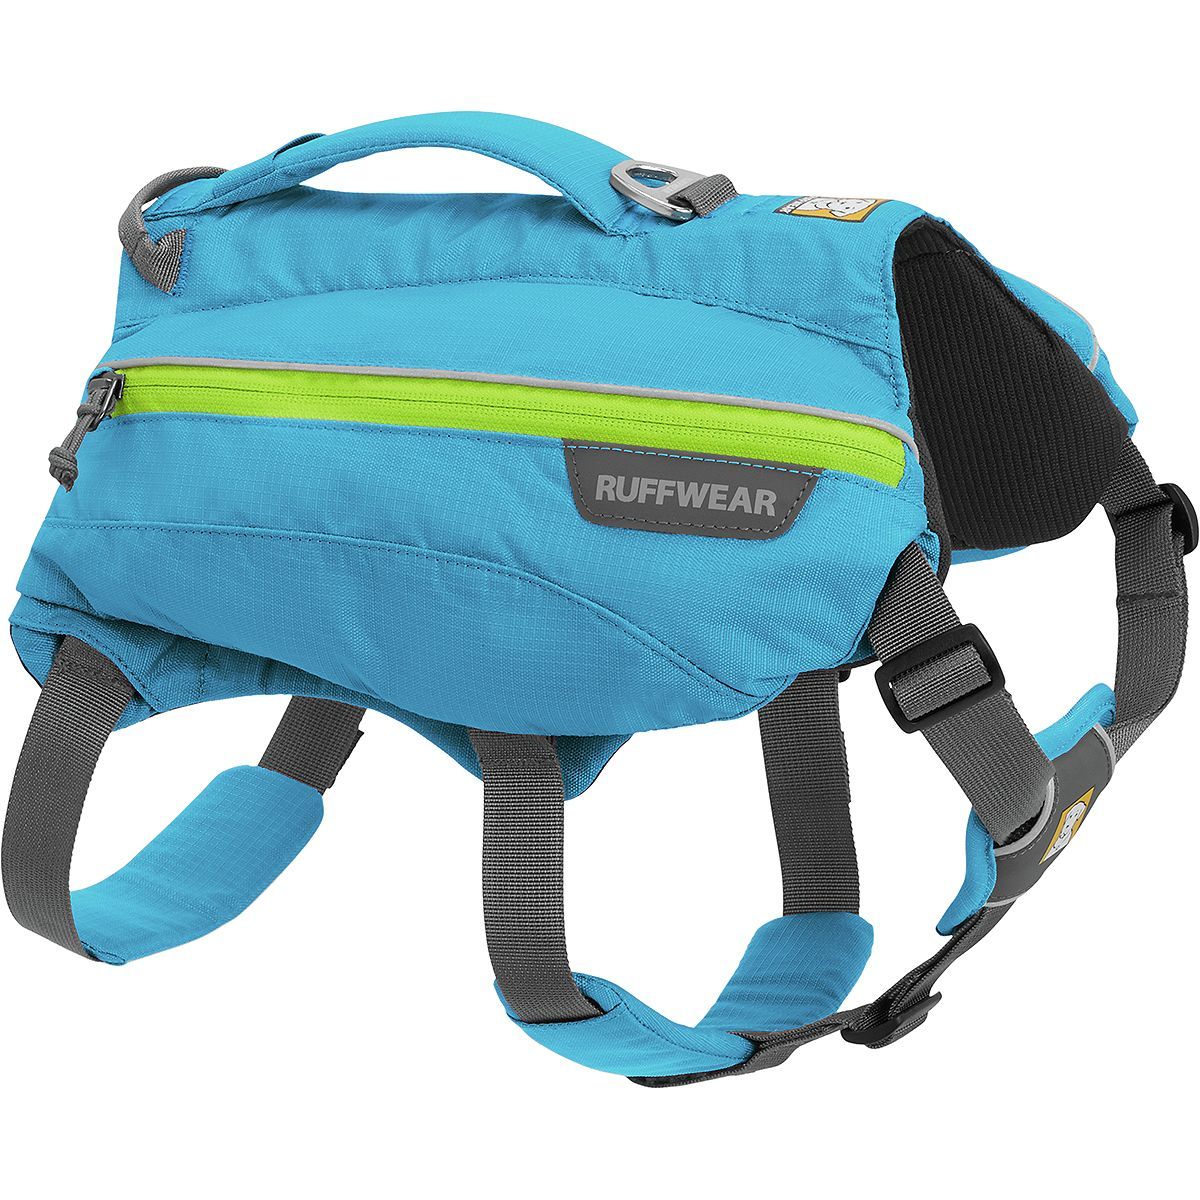 dog backpack canada